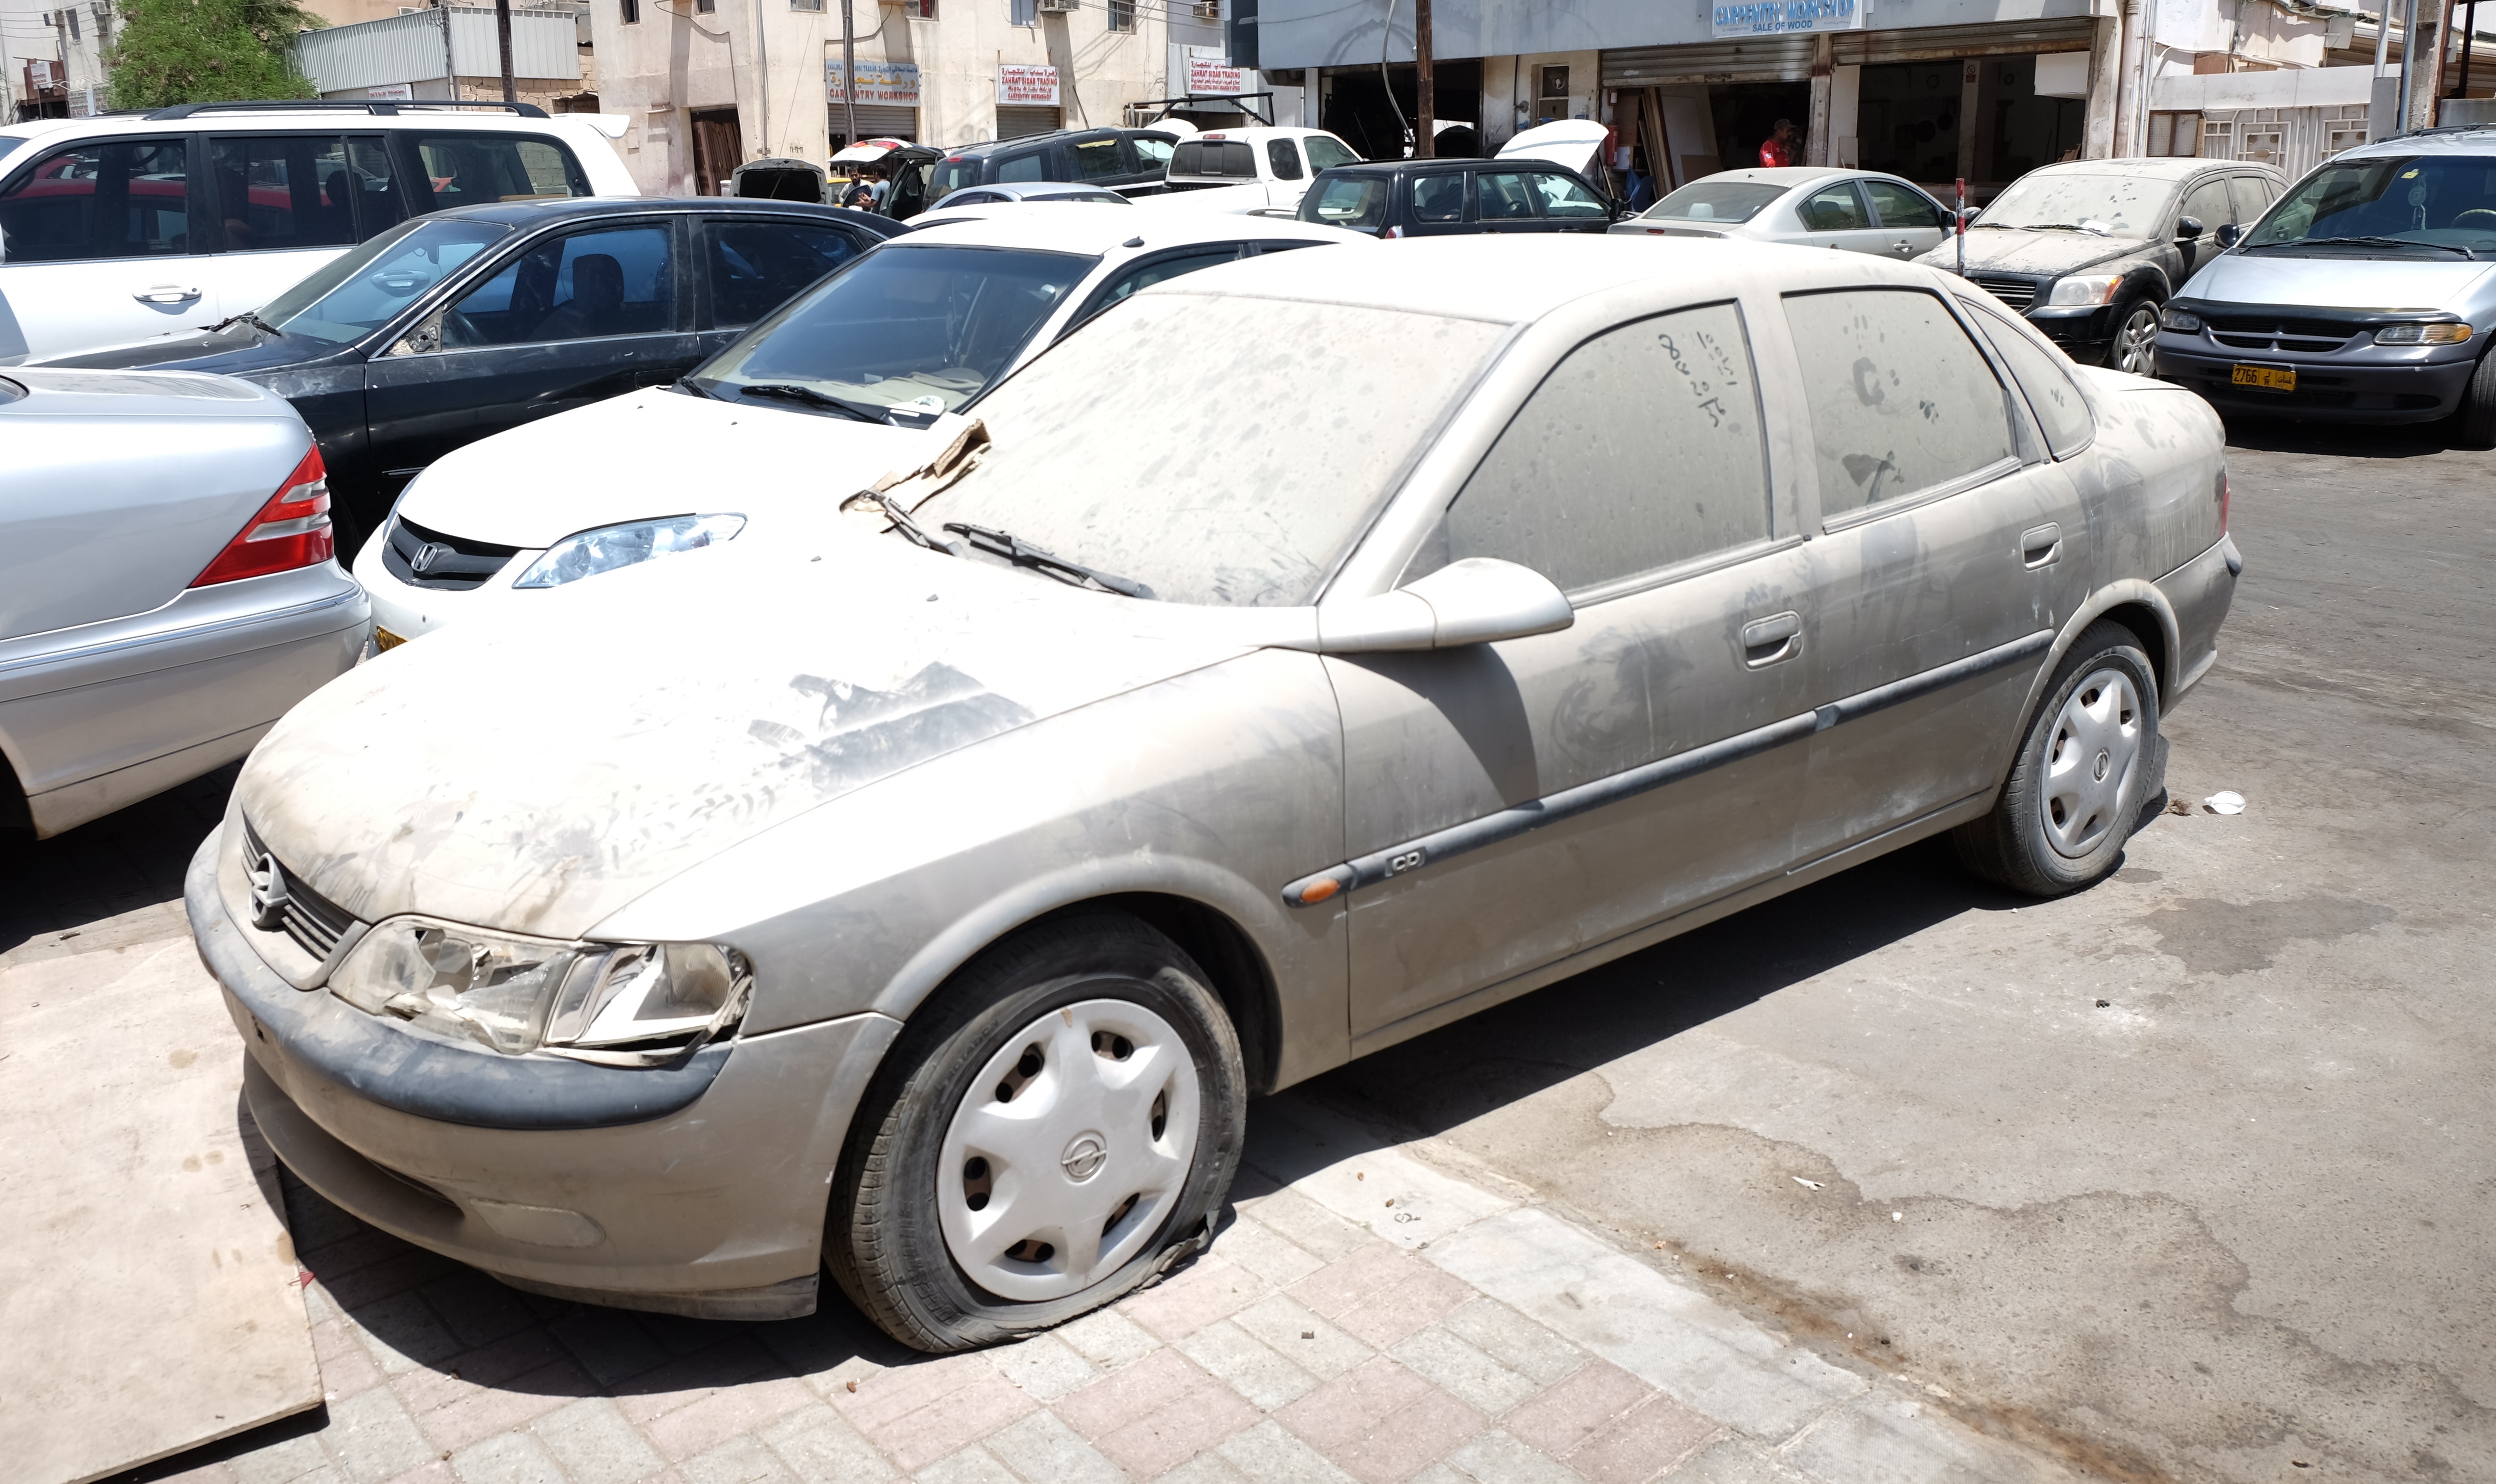 القانون تناول السيارات المهملة.. وغرامة بعض المخالفين تصل لـ1000 ريال عماني